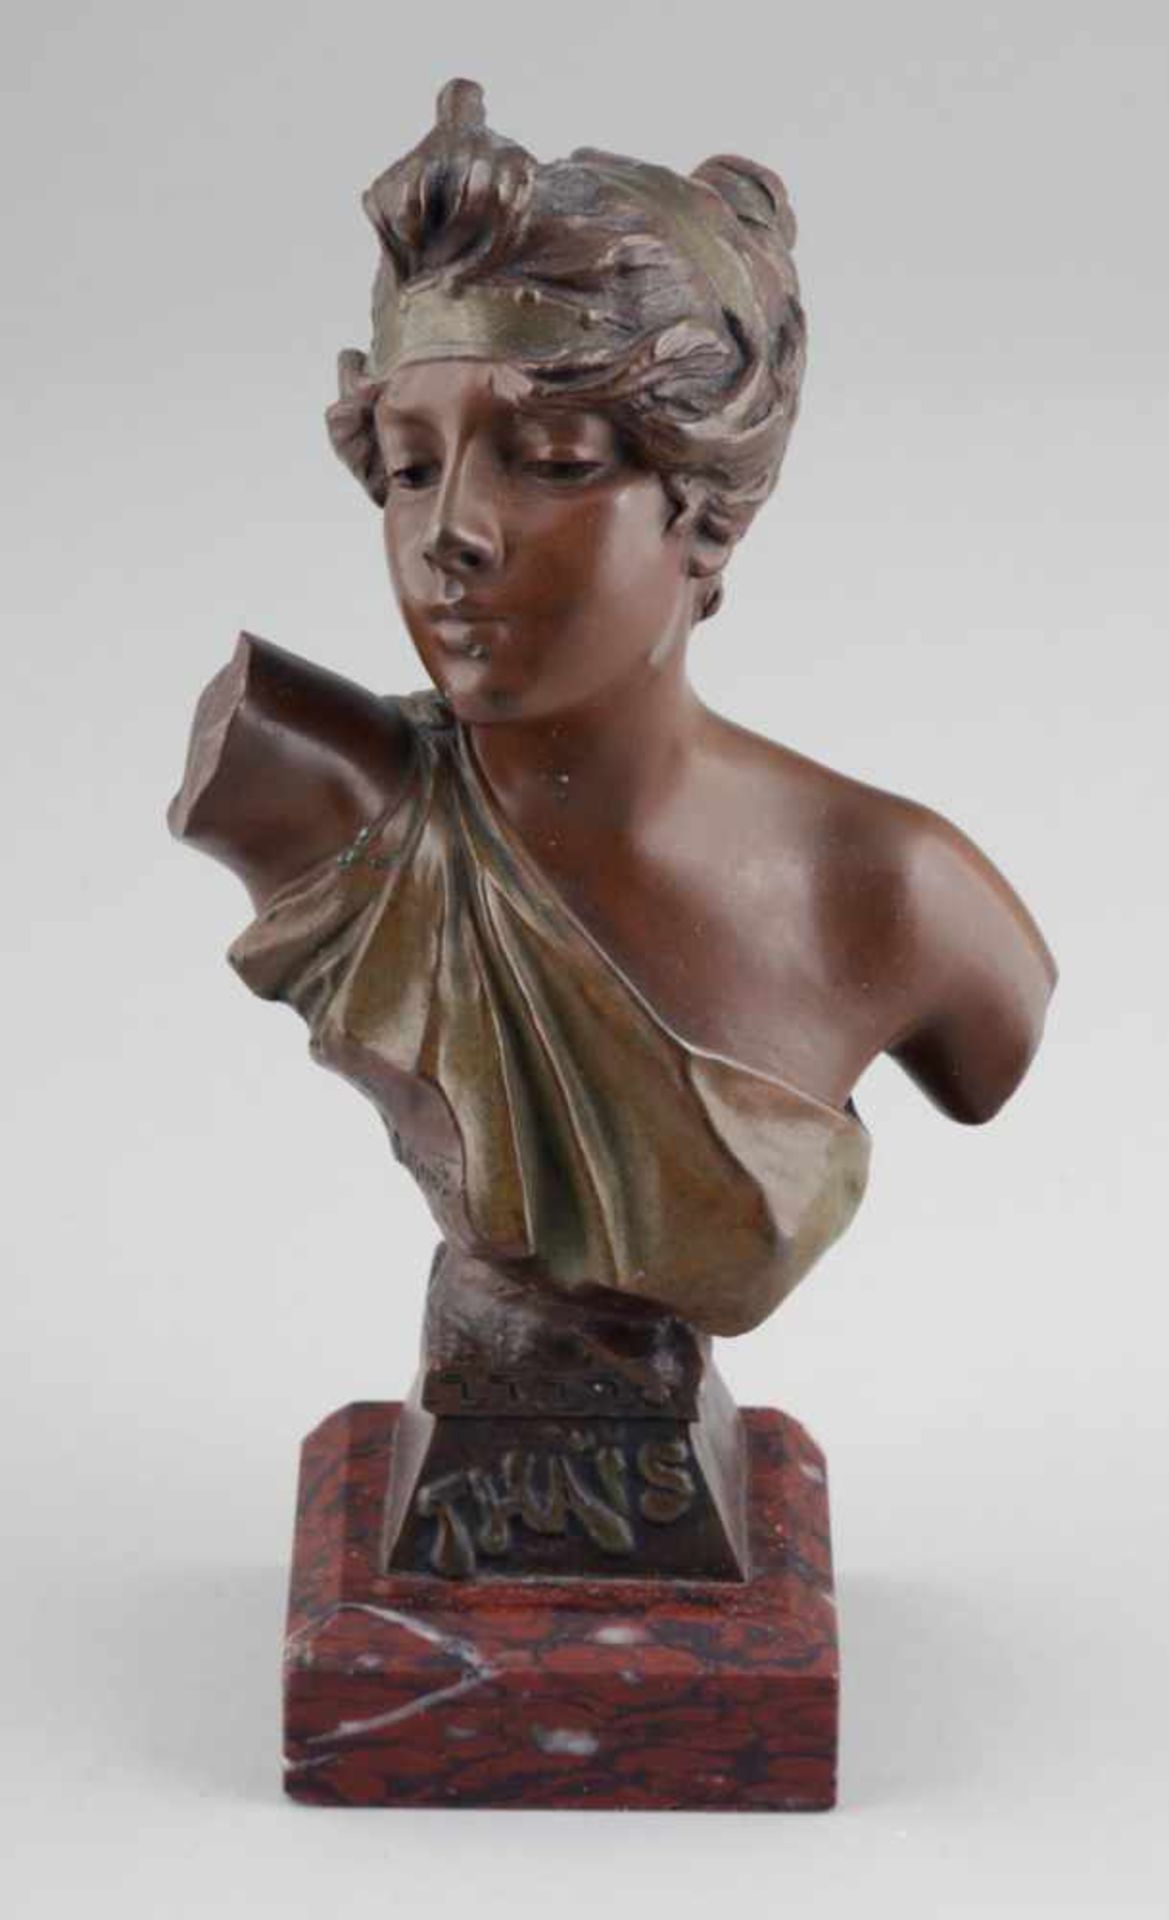 Emmanuel Villanis1858 Lille - 1914 Paris - "Thais" - Bronze. Braun und olivgrün patiniert. Rötlicher